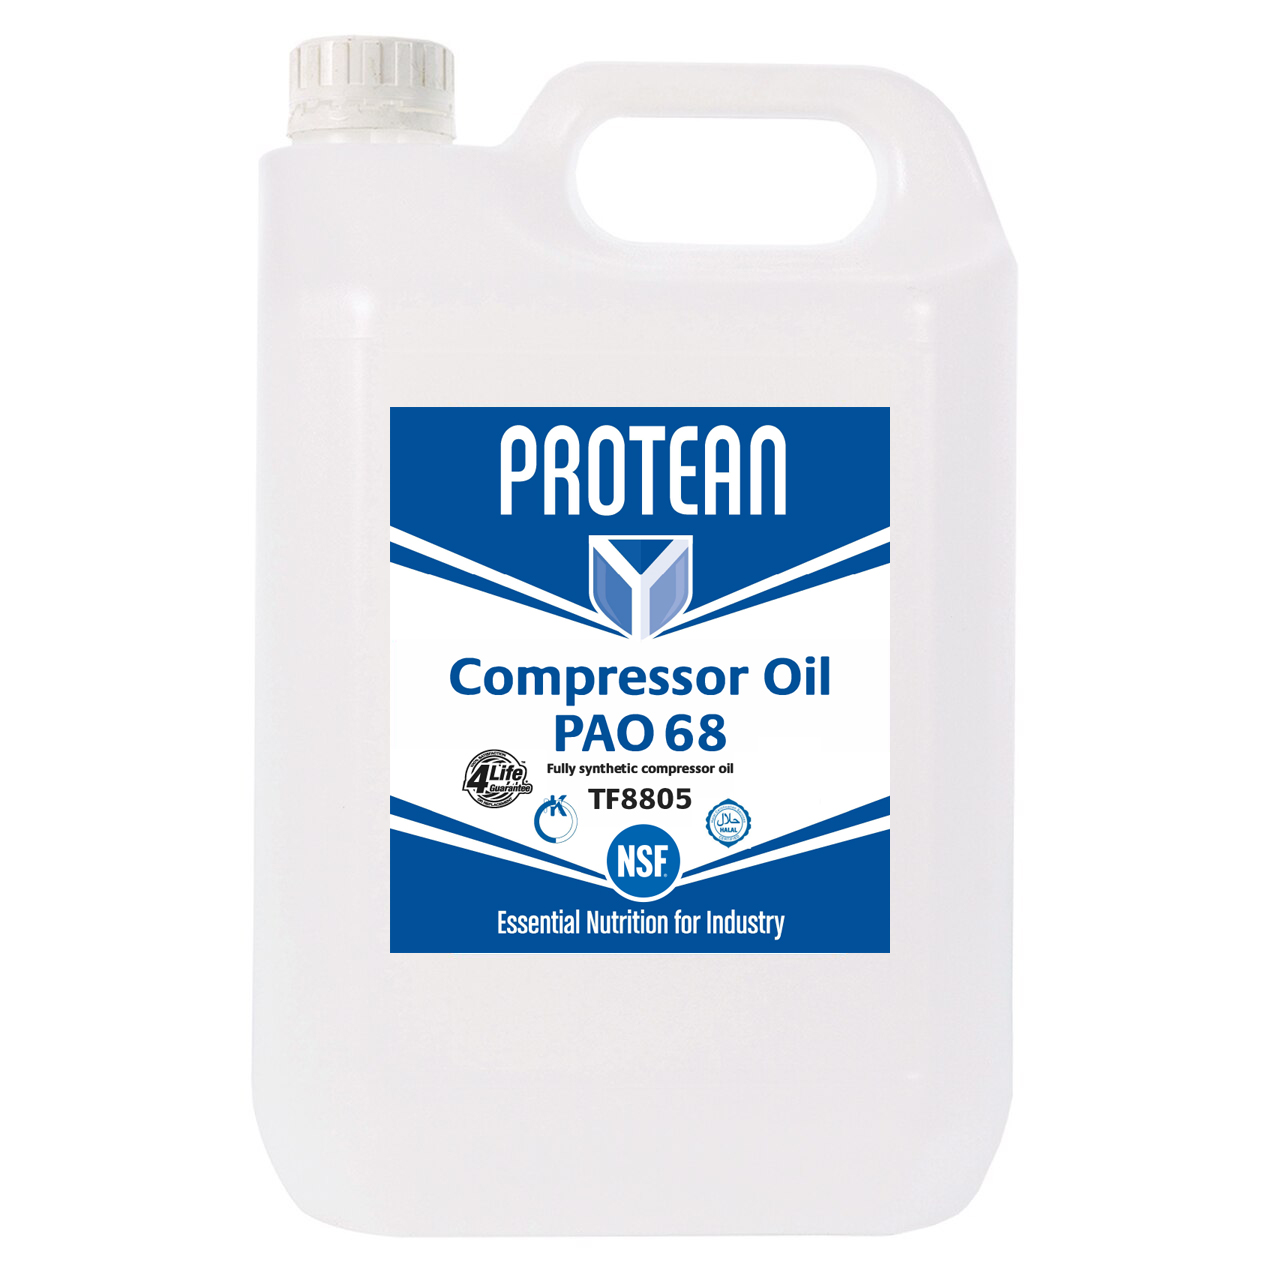 PROTEAN Compressor Oil PAO 68 5L - TF8805 - Box of 4